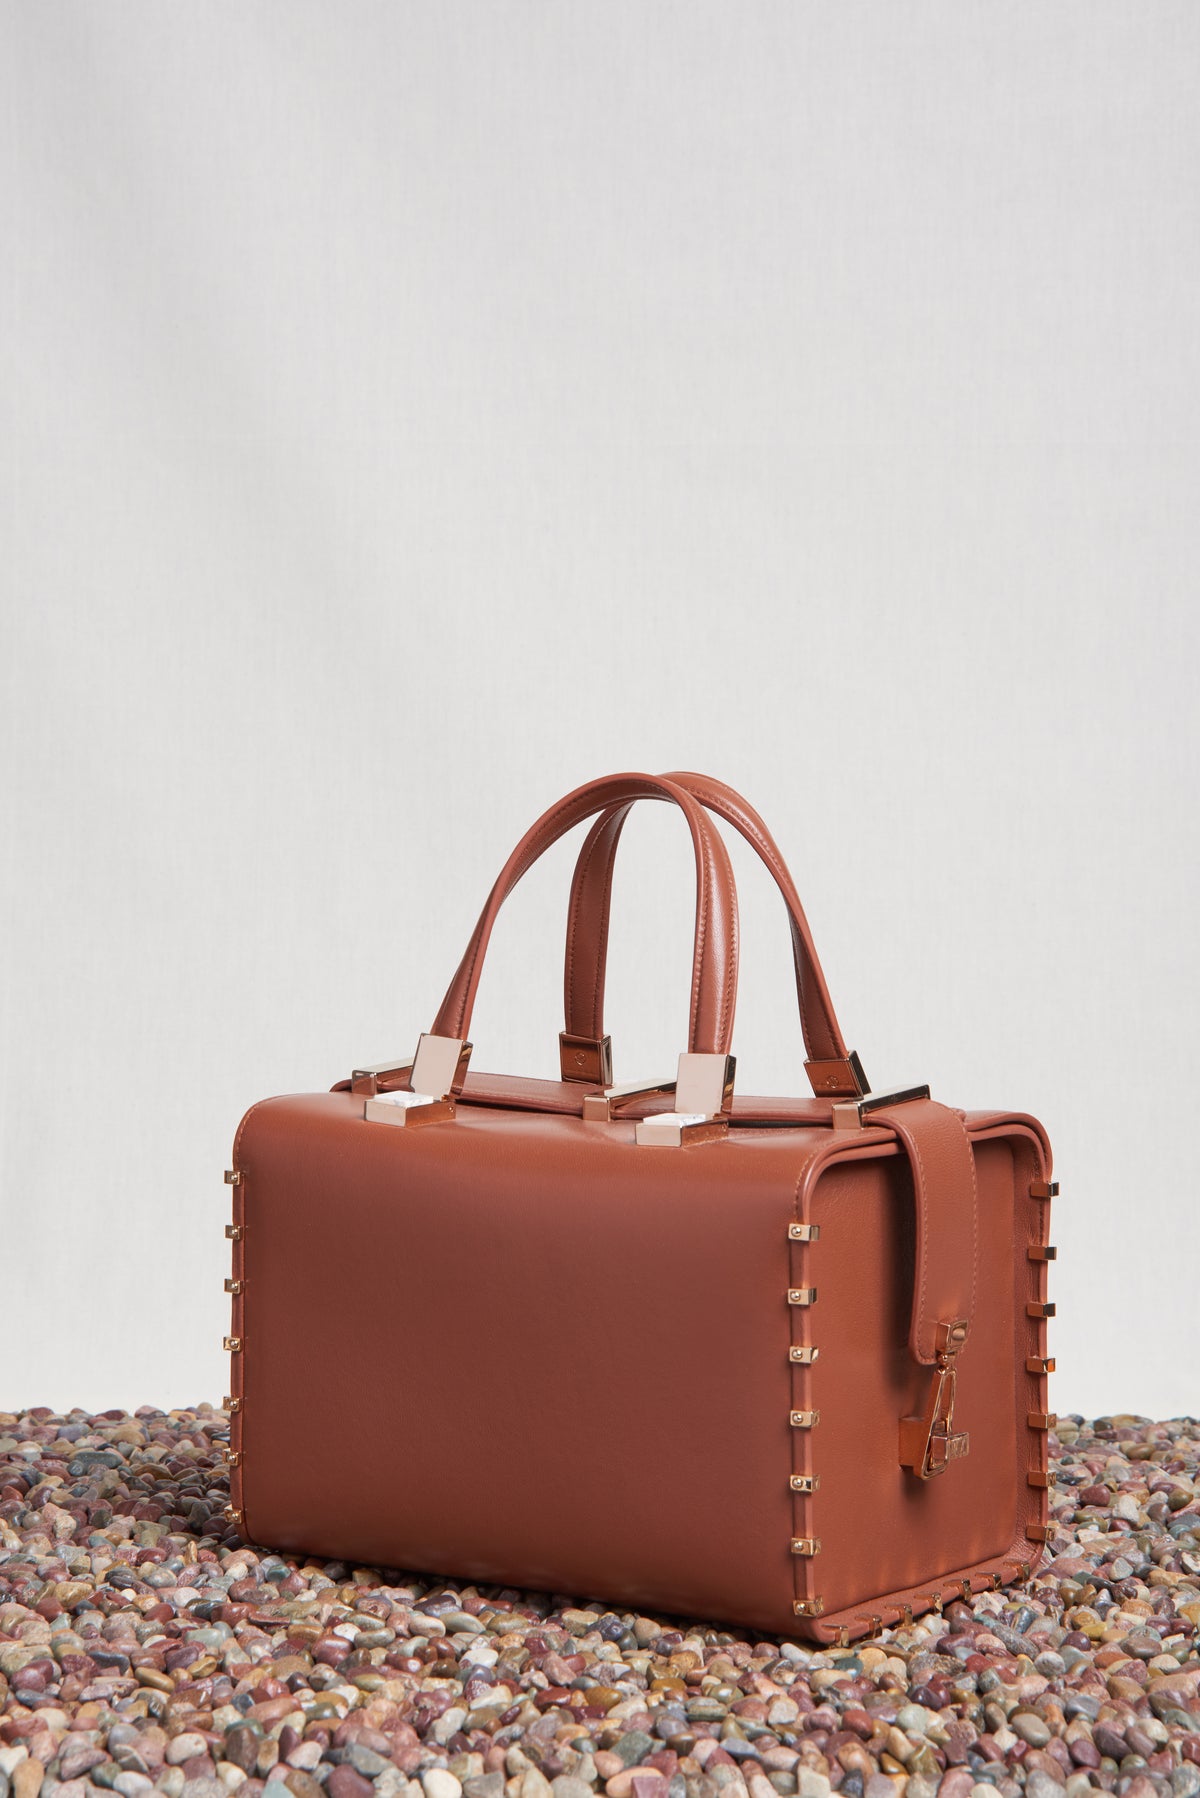 Wabi Bag in Cognac Nappa Leather